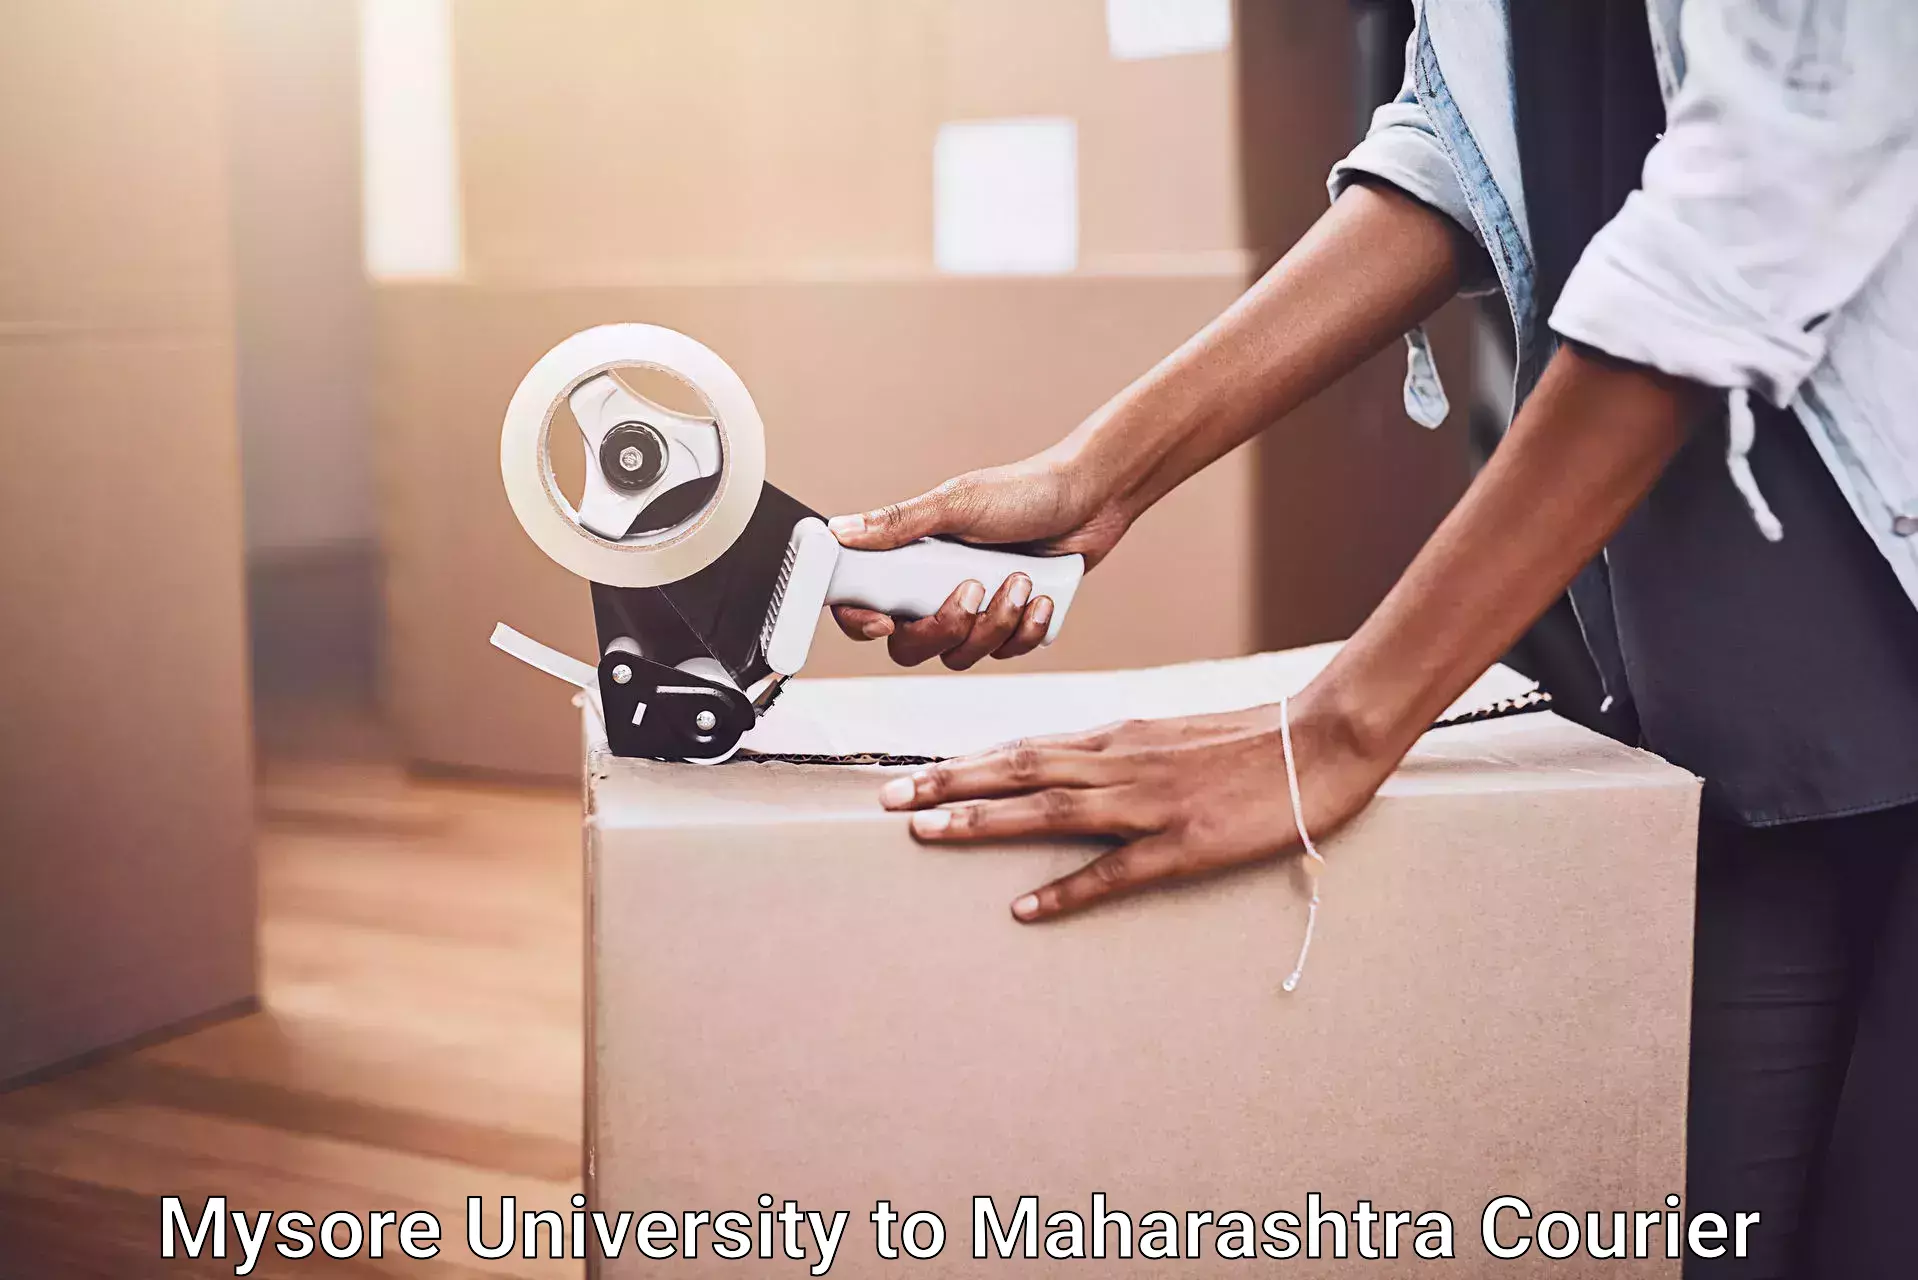 Professional packing and transport Mysore University to Nashik